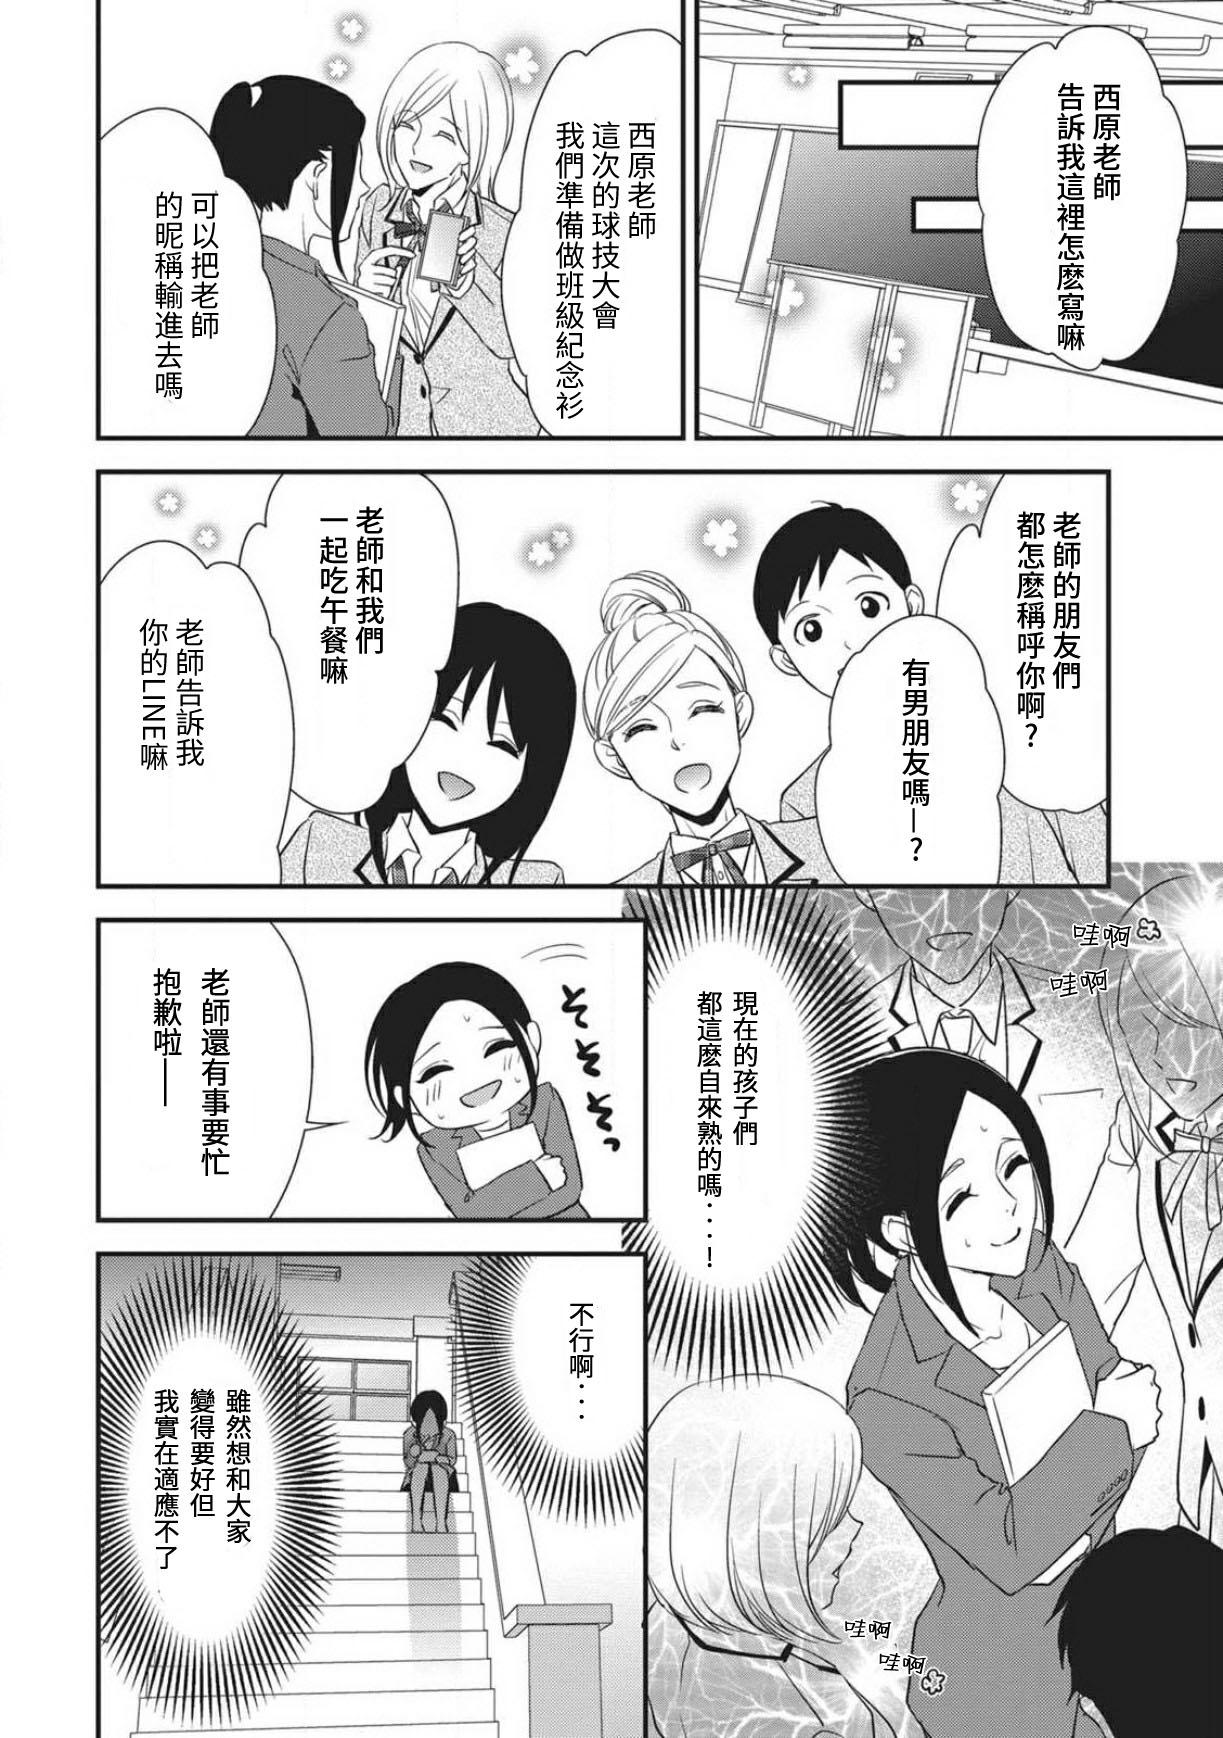 Amazing Watashi no hoken no sensei | 我的保健老师 Two - Page 8